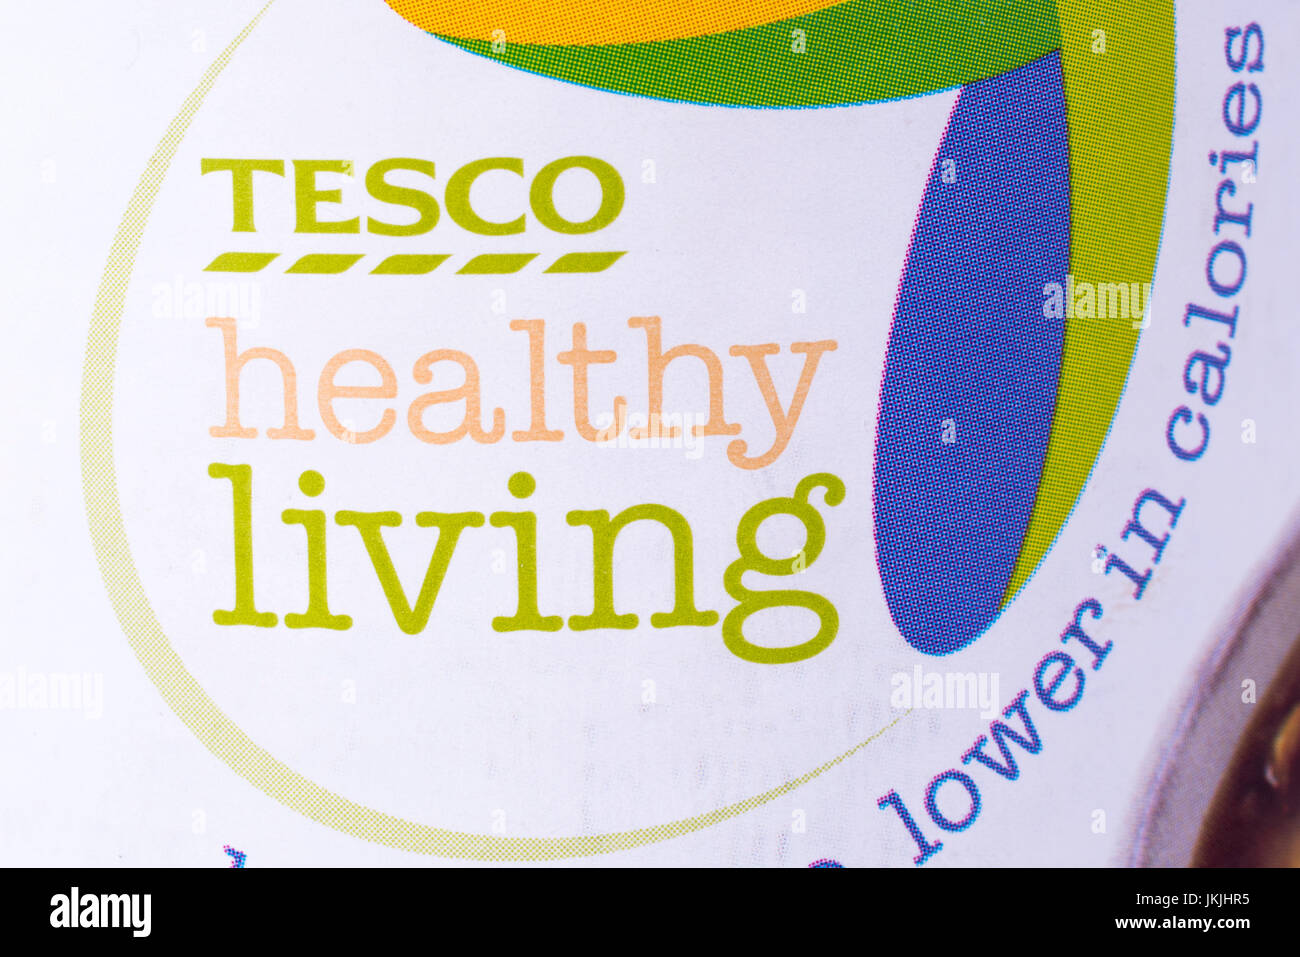 LONDON, UK - 7. Juli 2017: Eine Nahaufnahme des Symbols Tesco Healthy Living auf eines ihrer gesunde Alternative Produkte auf 7. Juli 2017. Stockfoto